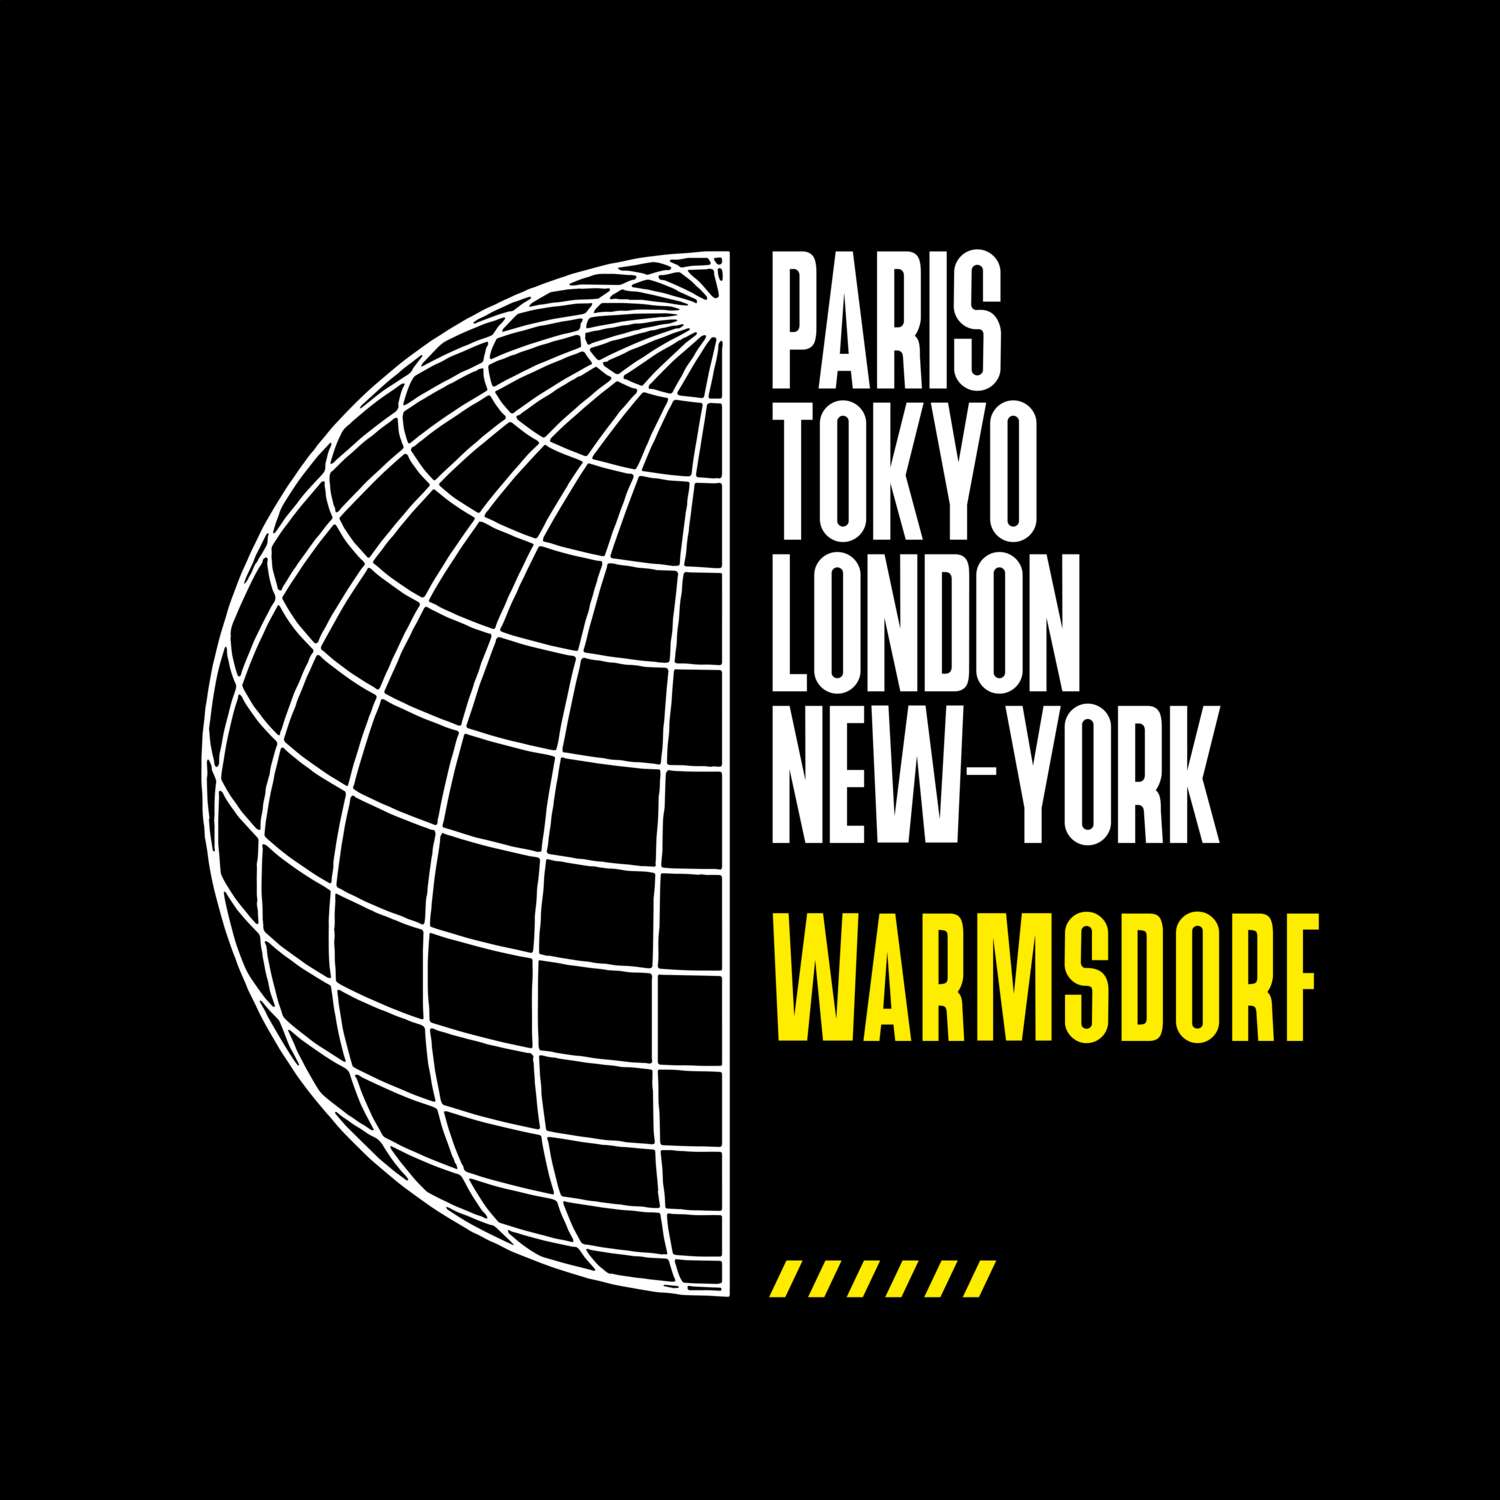 Warmsdorf T-Shirt »Paris Tokyo London«